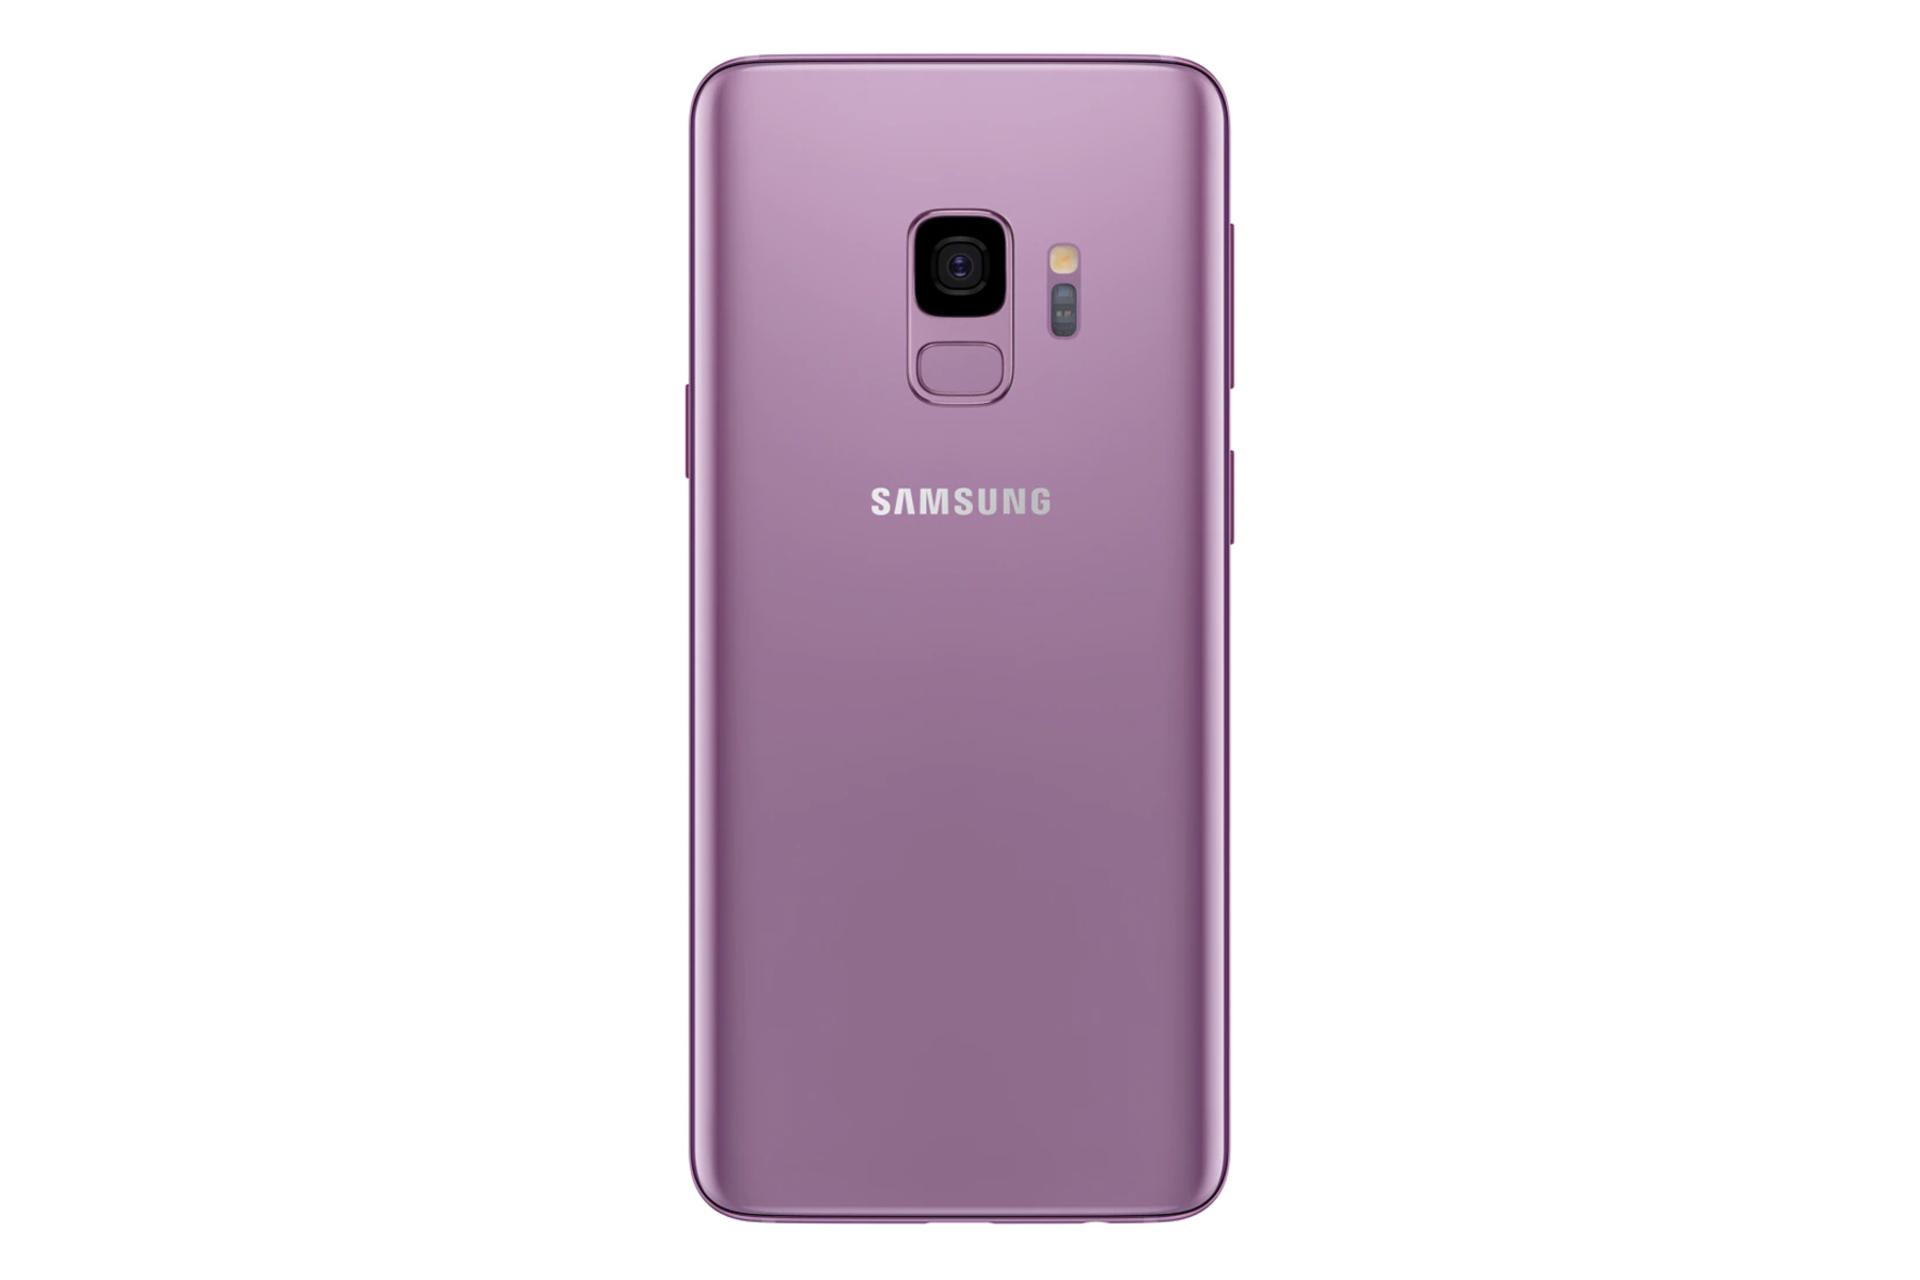 دوربین گلکسی اس 9 اکتیو سامسونگ Samsung Galaxy S9 Active